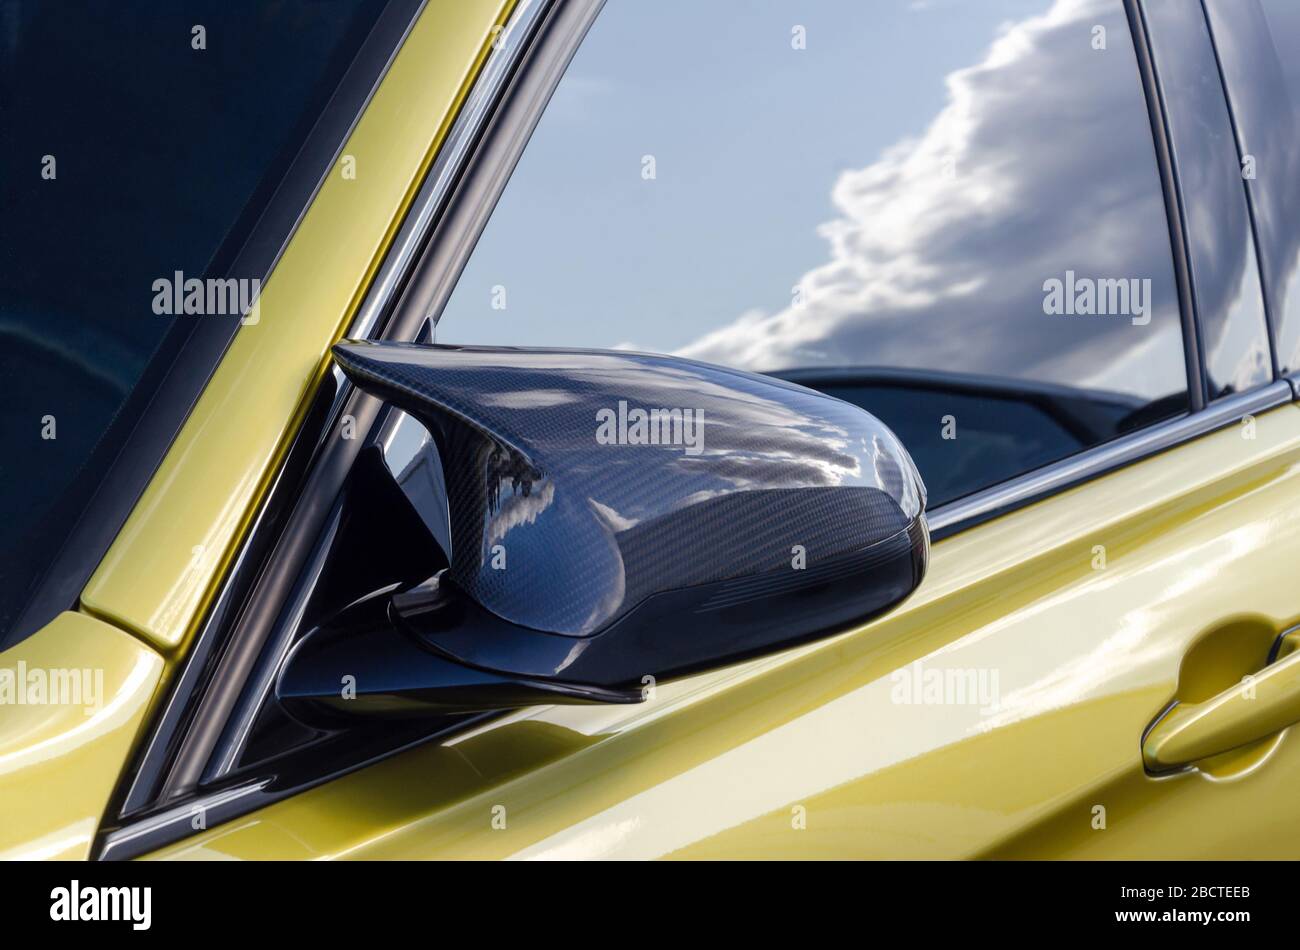 Teil eines teuren Sportwagens. Carbon-Spiegel. goldene Farbe Auto. Auf der Tür Fenster die Reflexion des Himmels Stockfoto